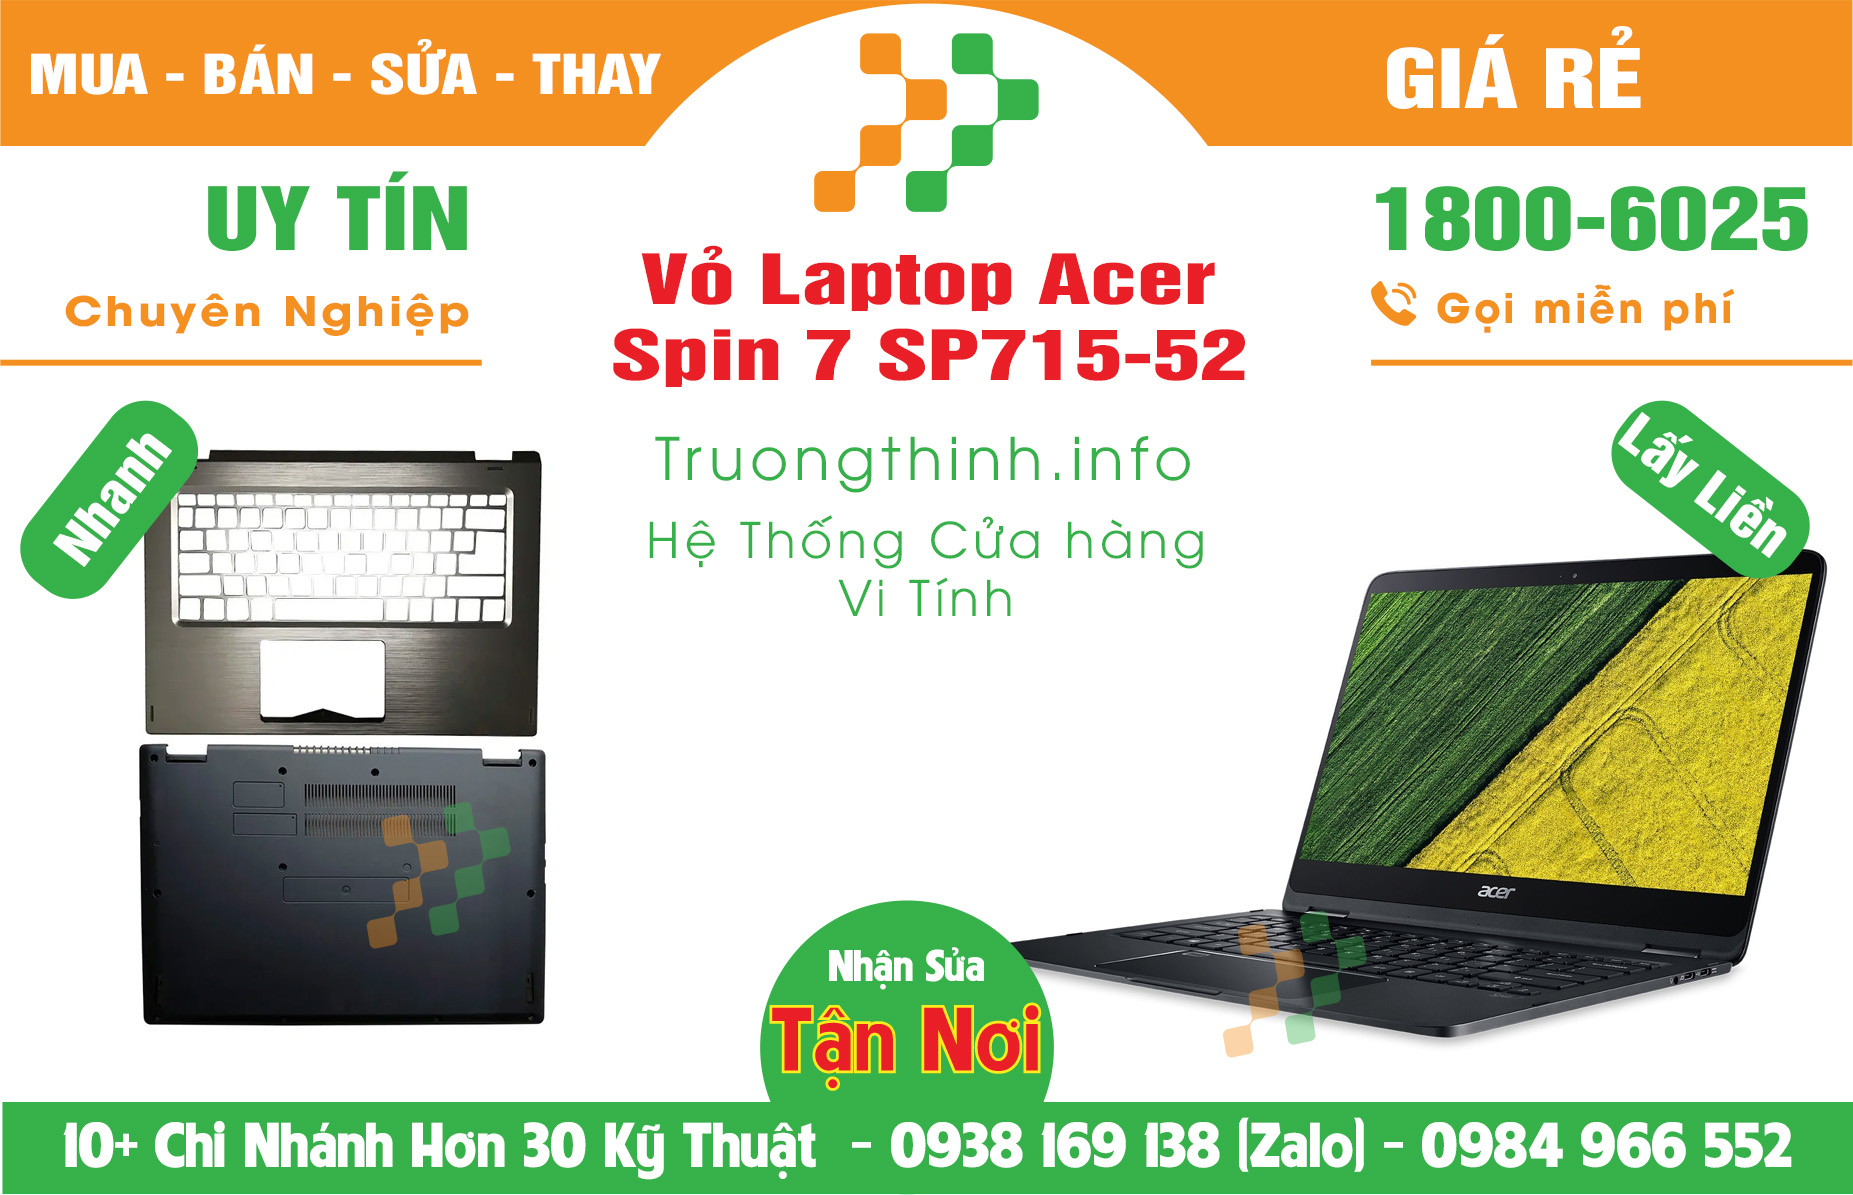 Mua Bán Vỏ Laptop Acer Spin 7 SP715-52 Giá Rẻ | Máy Tính Trường Thịnh Giá Rẻ